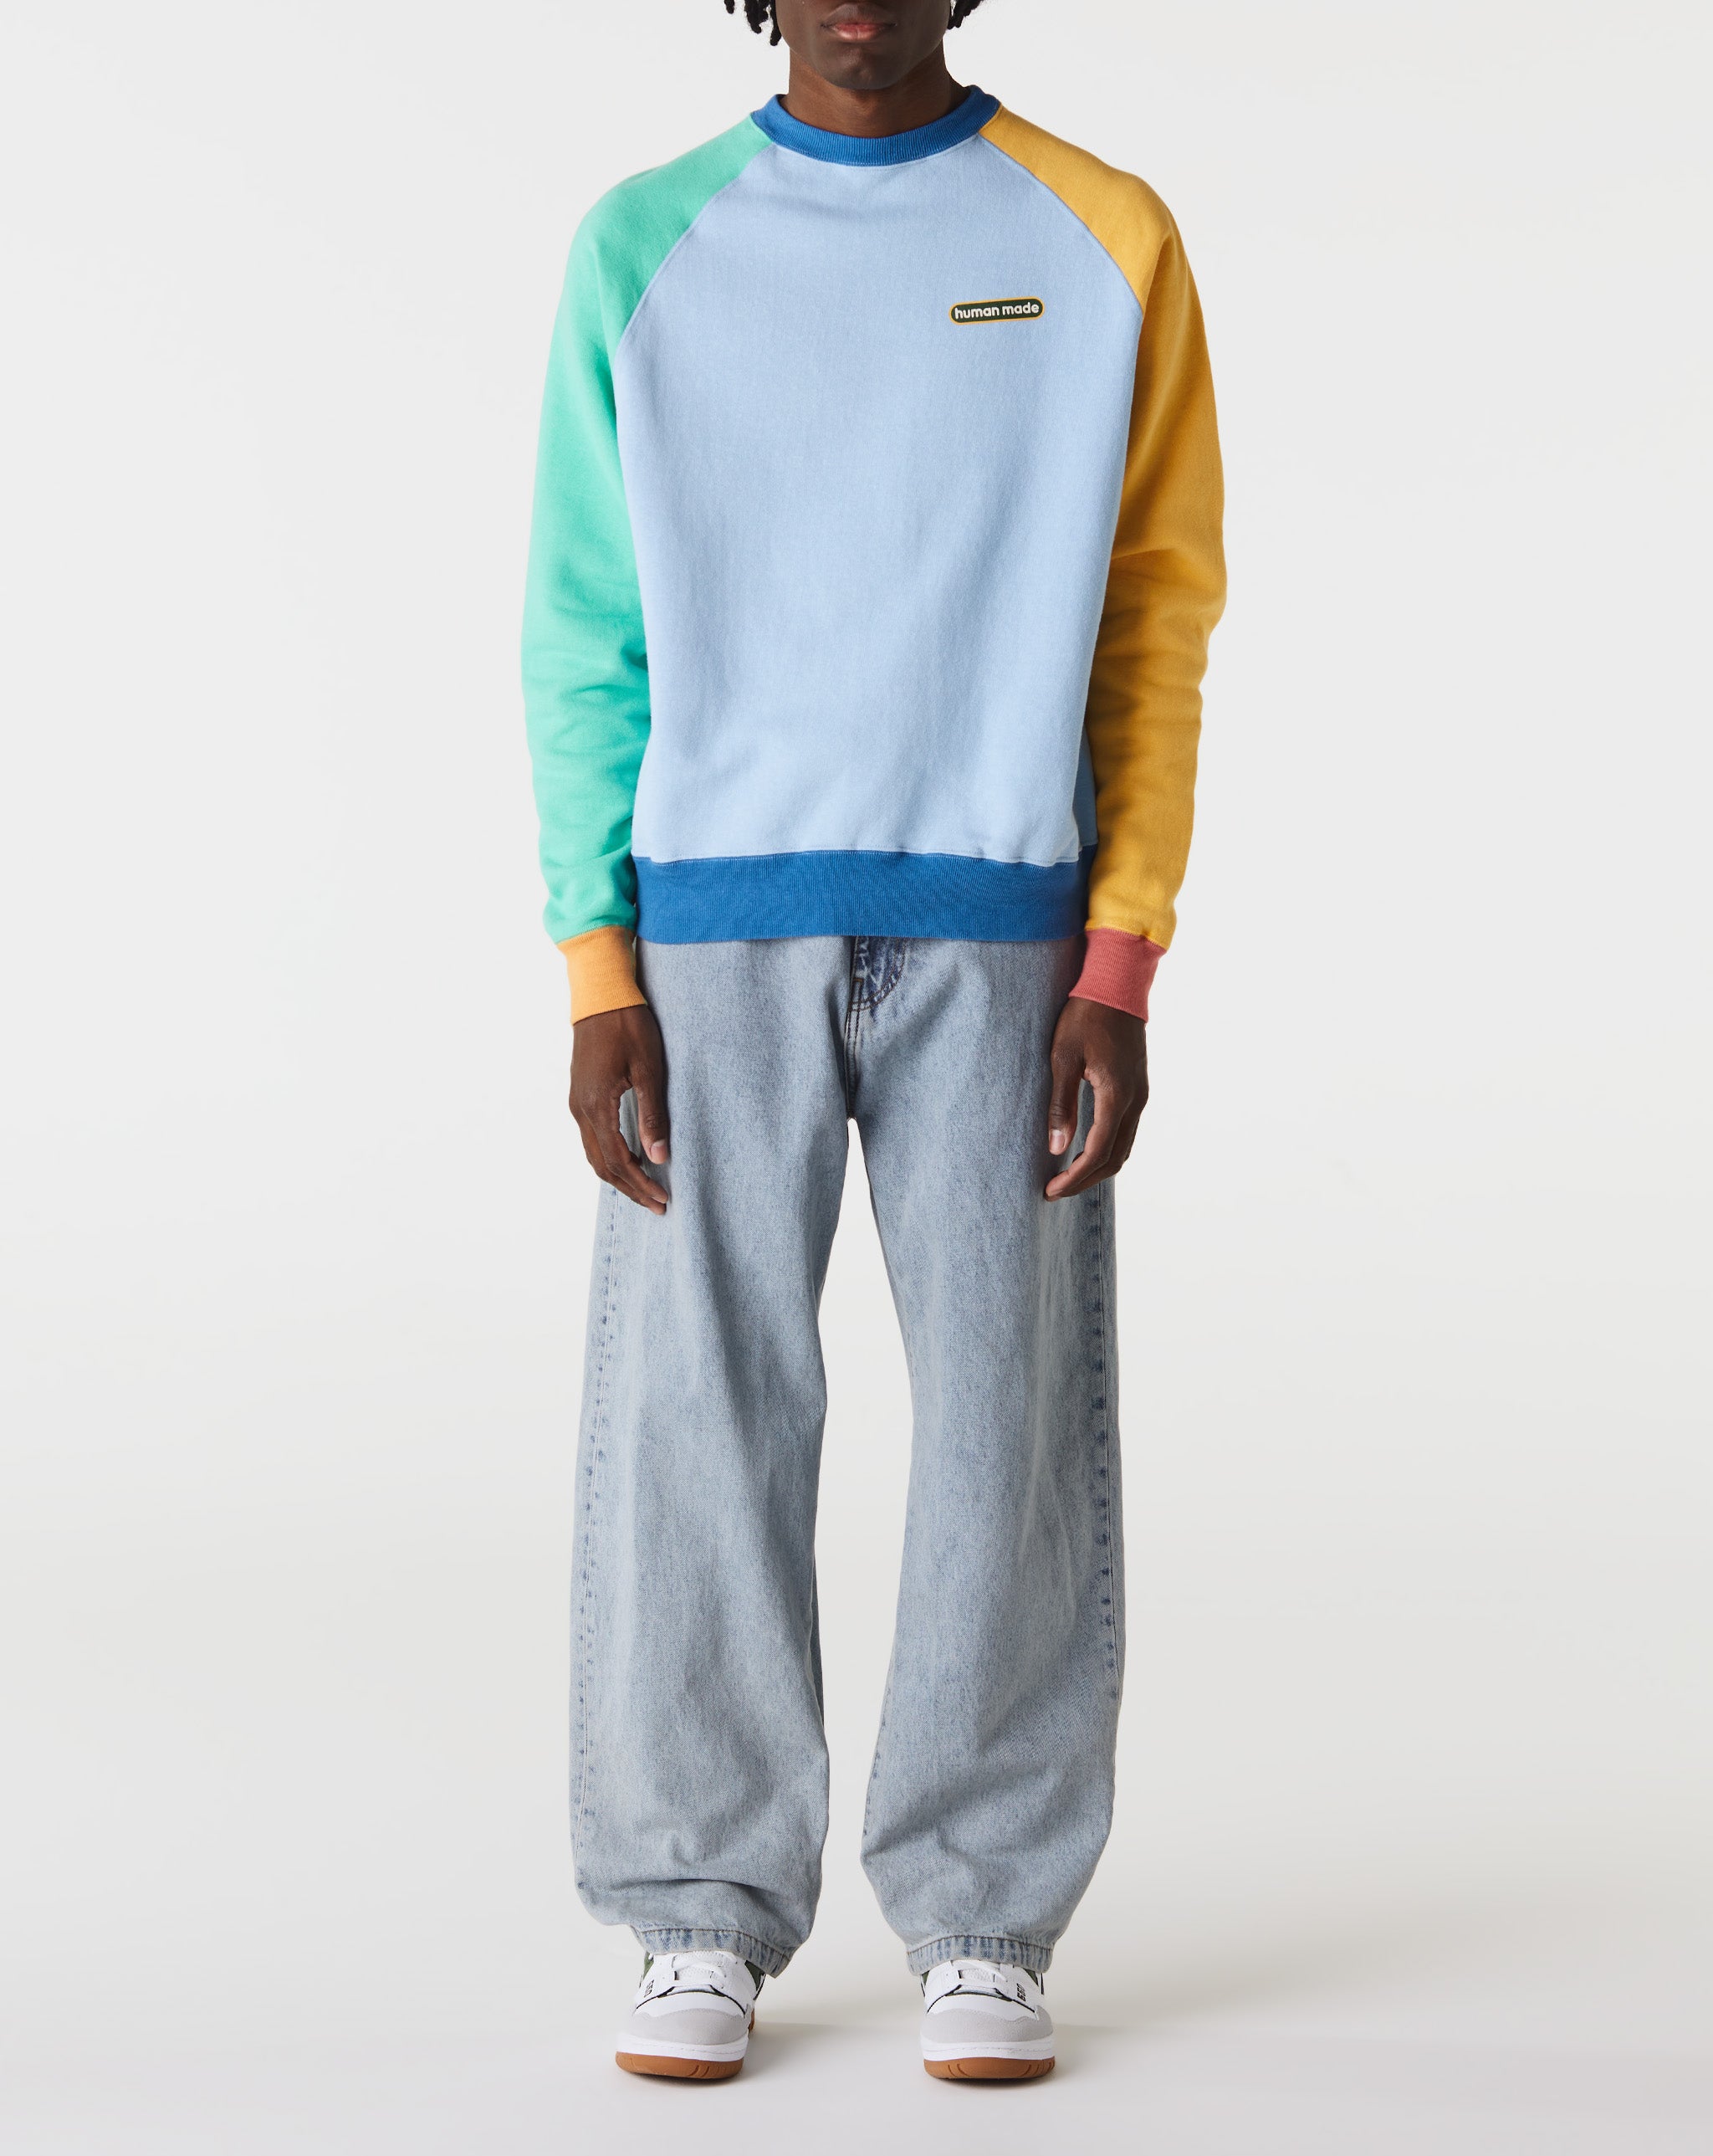 Human Made Crazy Tsuriami Sweatshirt  - Cheap Cerbe Jordan outlet